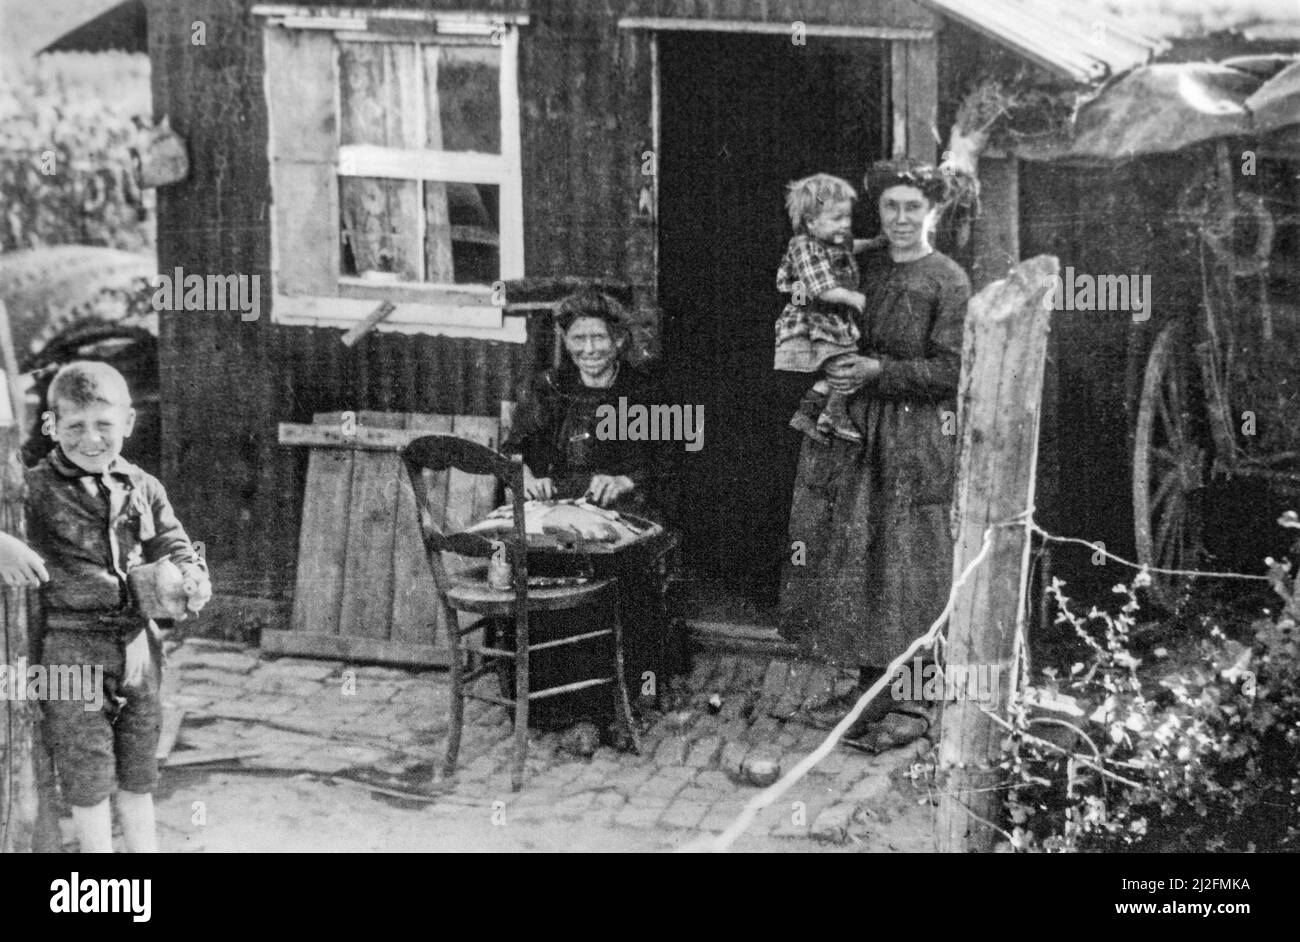 Baracca di legno usata come casa prefabbricata temporanea per la prima guerra mondiale uno vittime civili fiamminghe nel 1920 a Boezinge, Fiandre Occidentali, Belgio Foto Stock